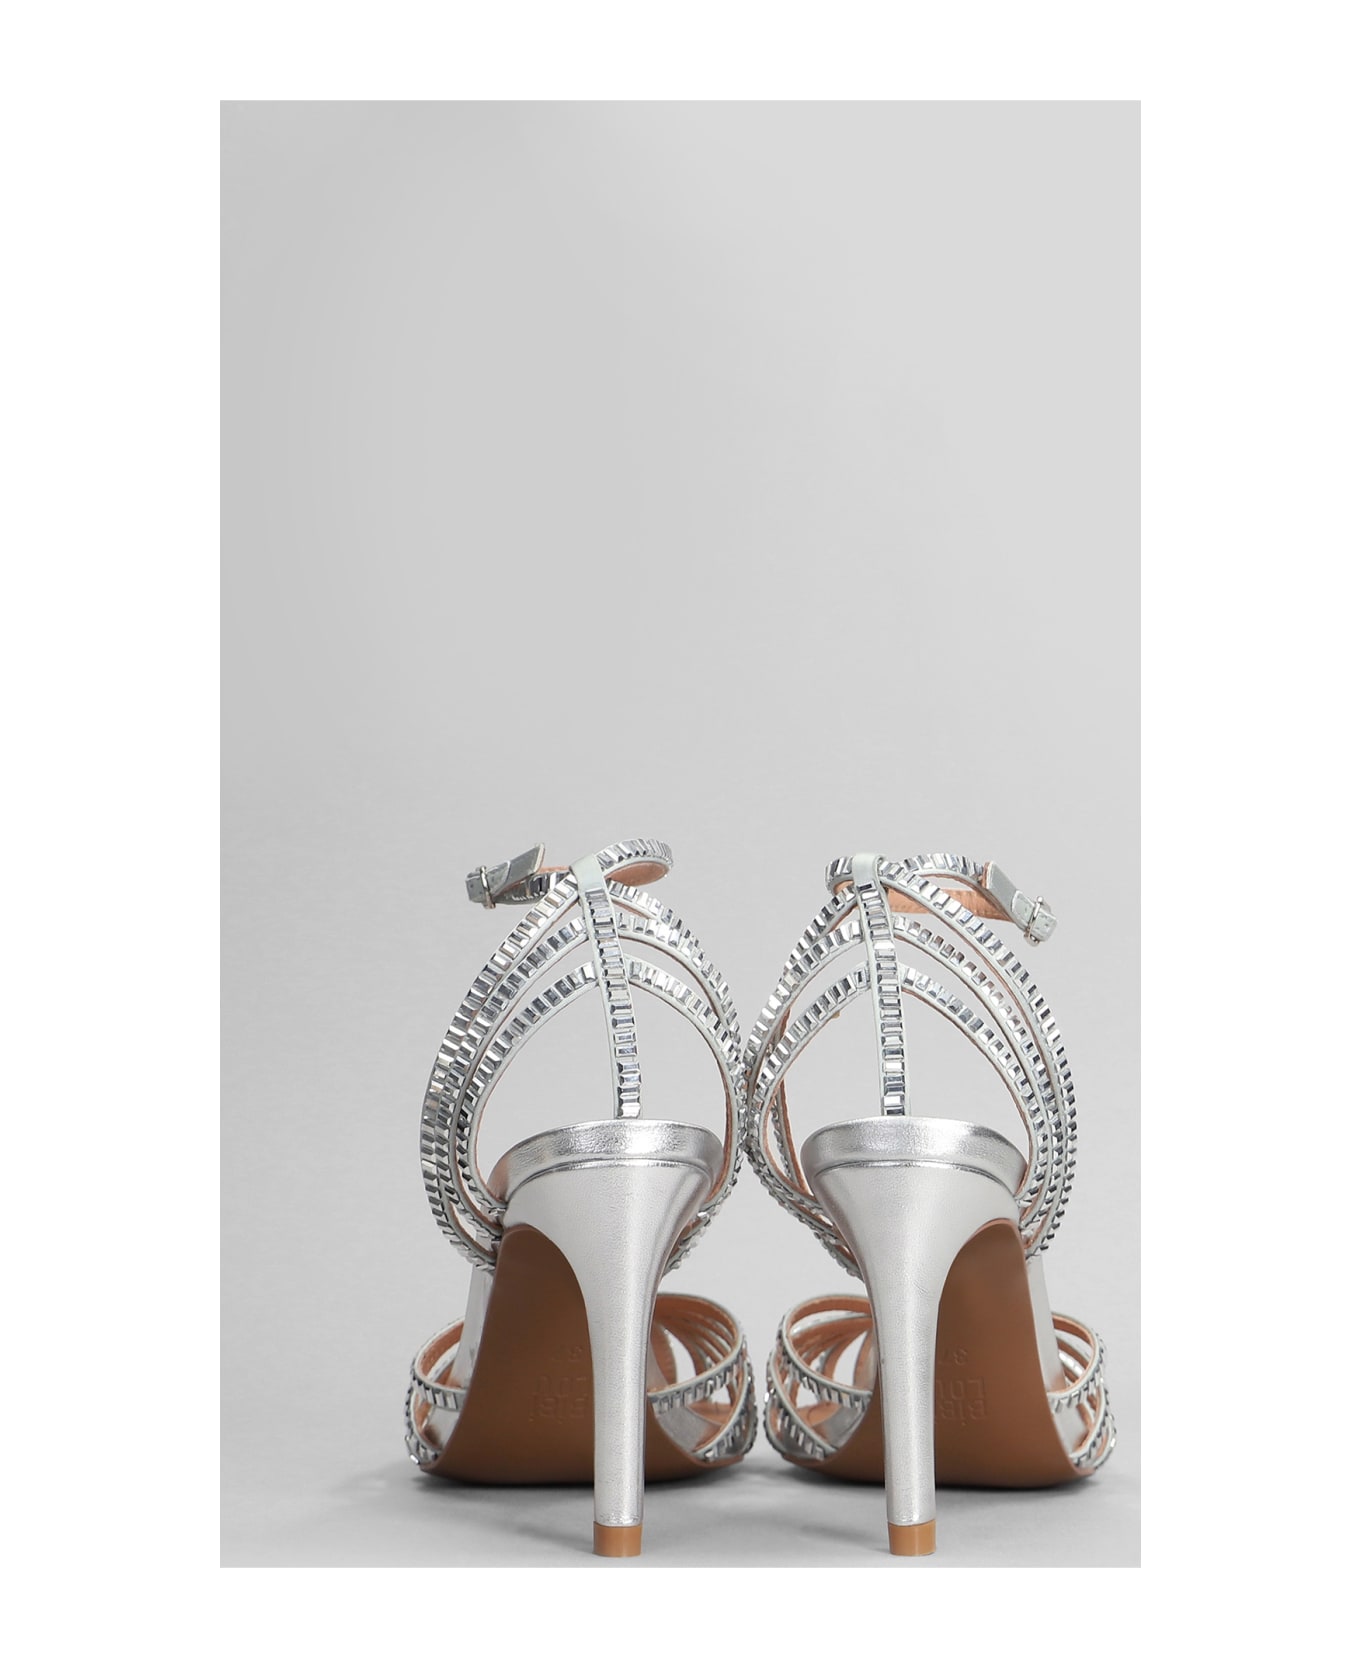 Bibi Lou Sernik Sandals In Silver Leather - silver